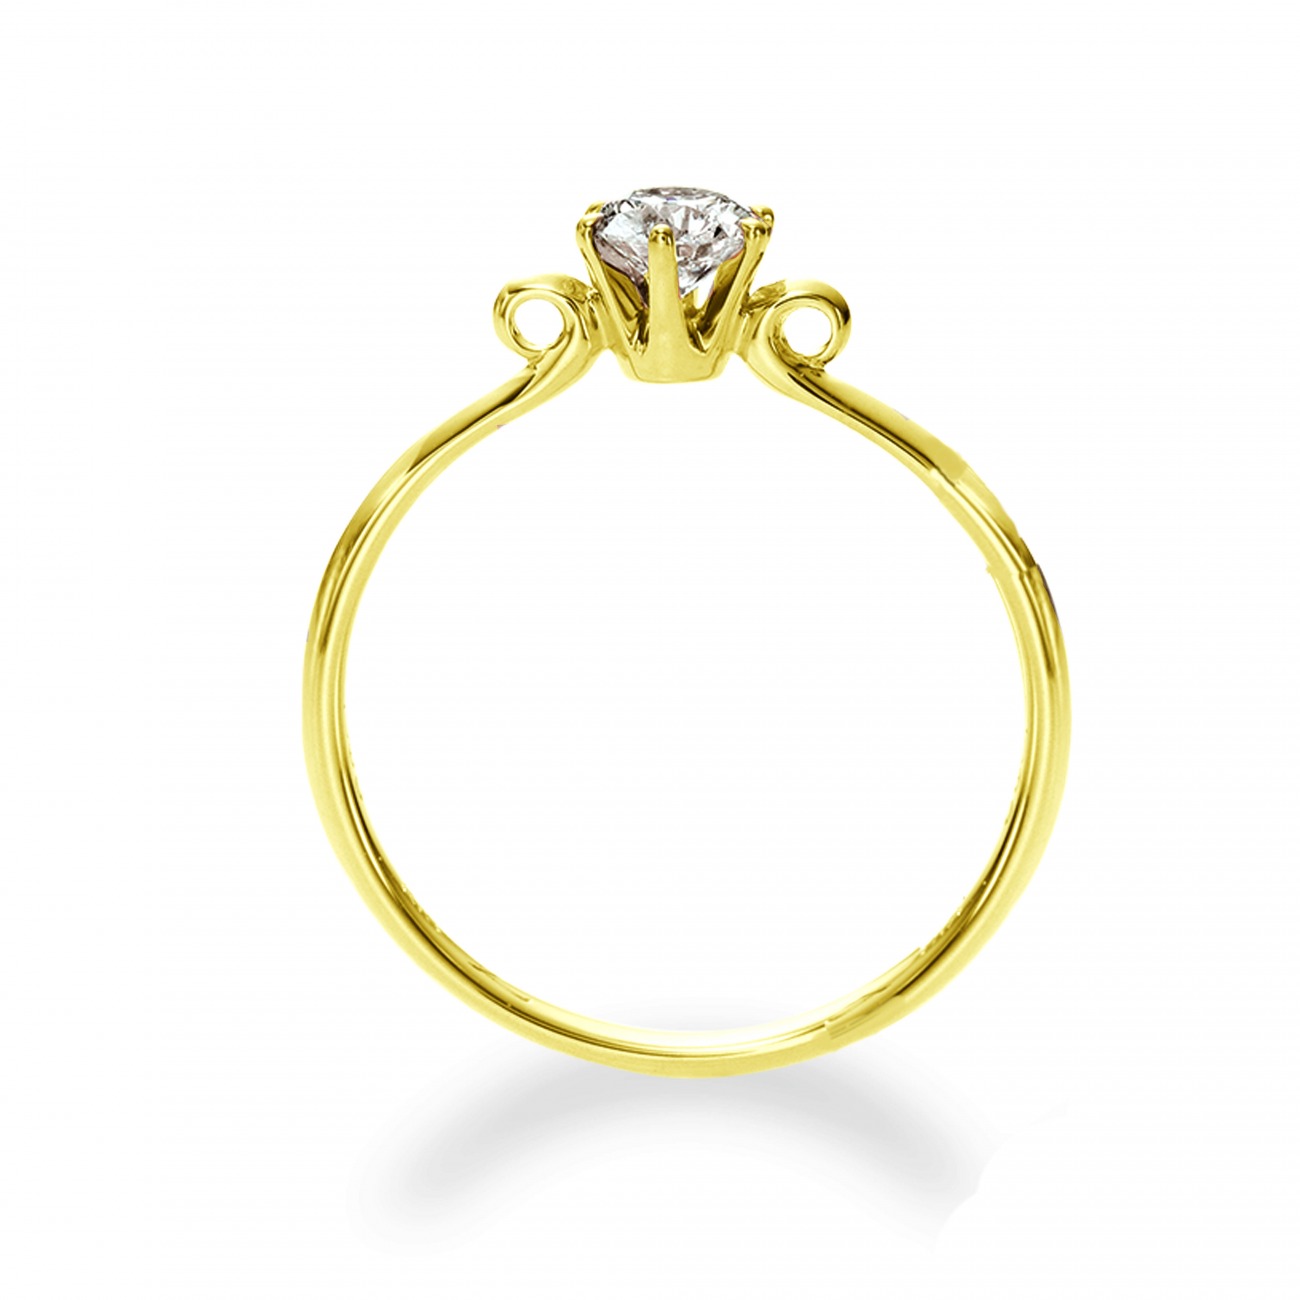 クルンとしたデザインがかわいい婚約指輪